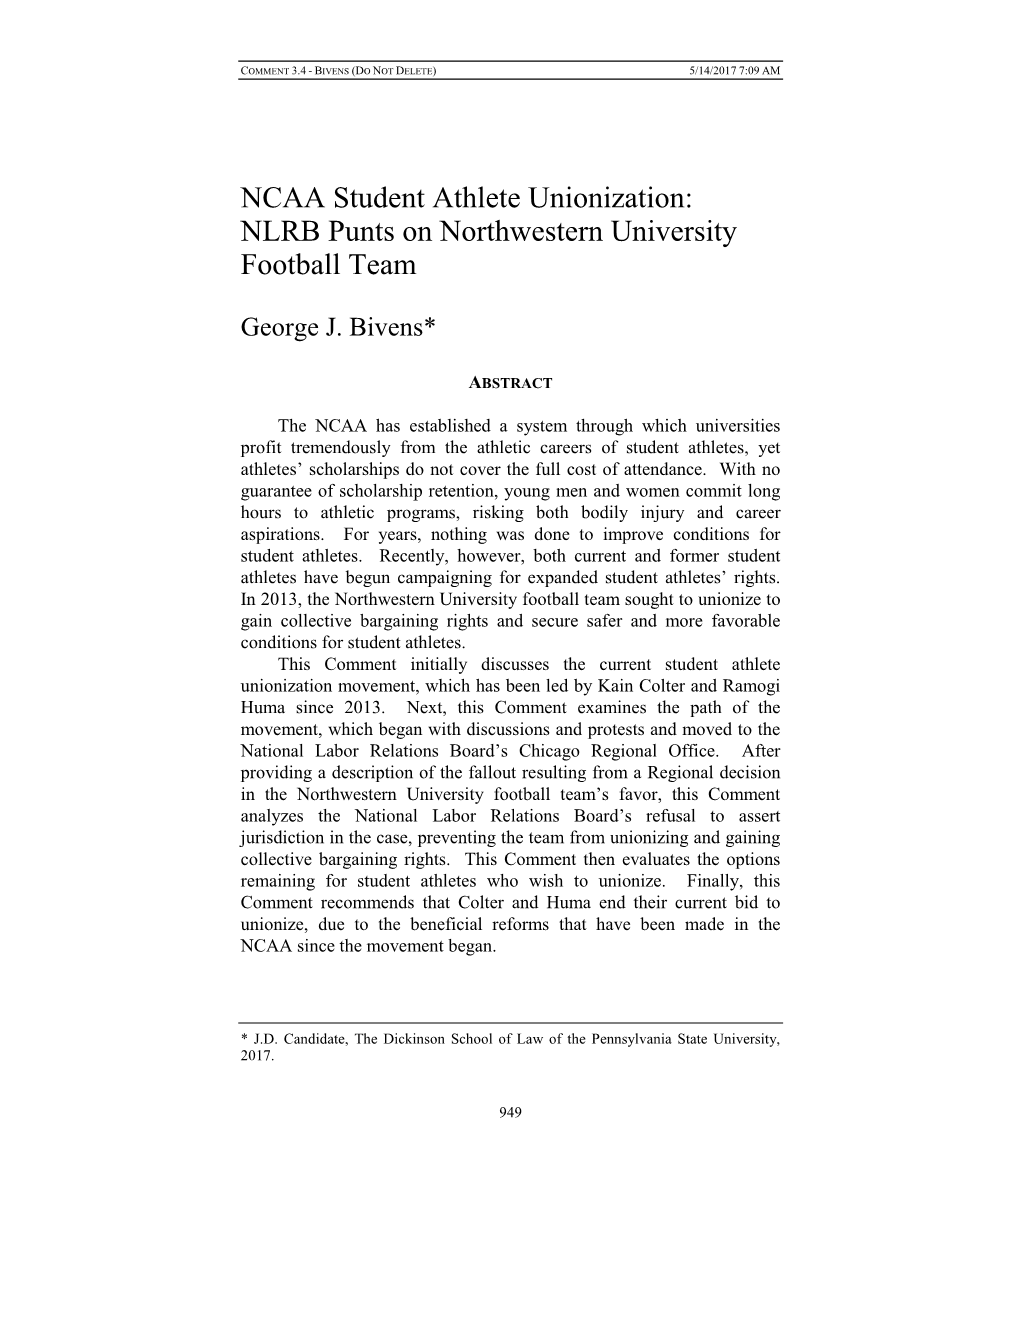 NCAA Student Athlete Unionization: NLRB Punts on Northwestern University Football Team